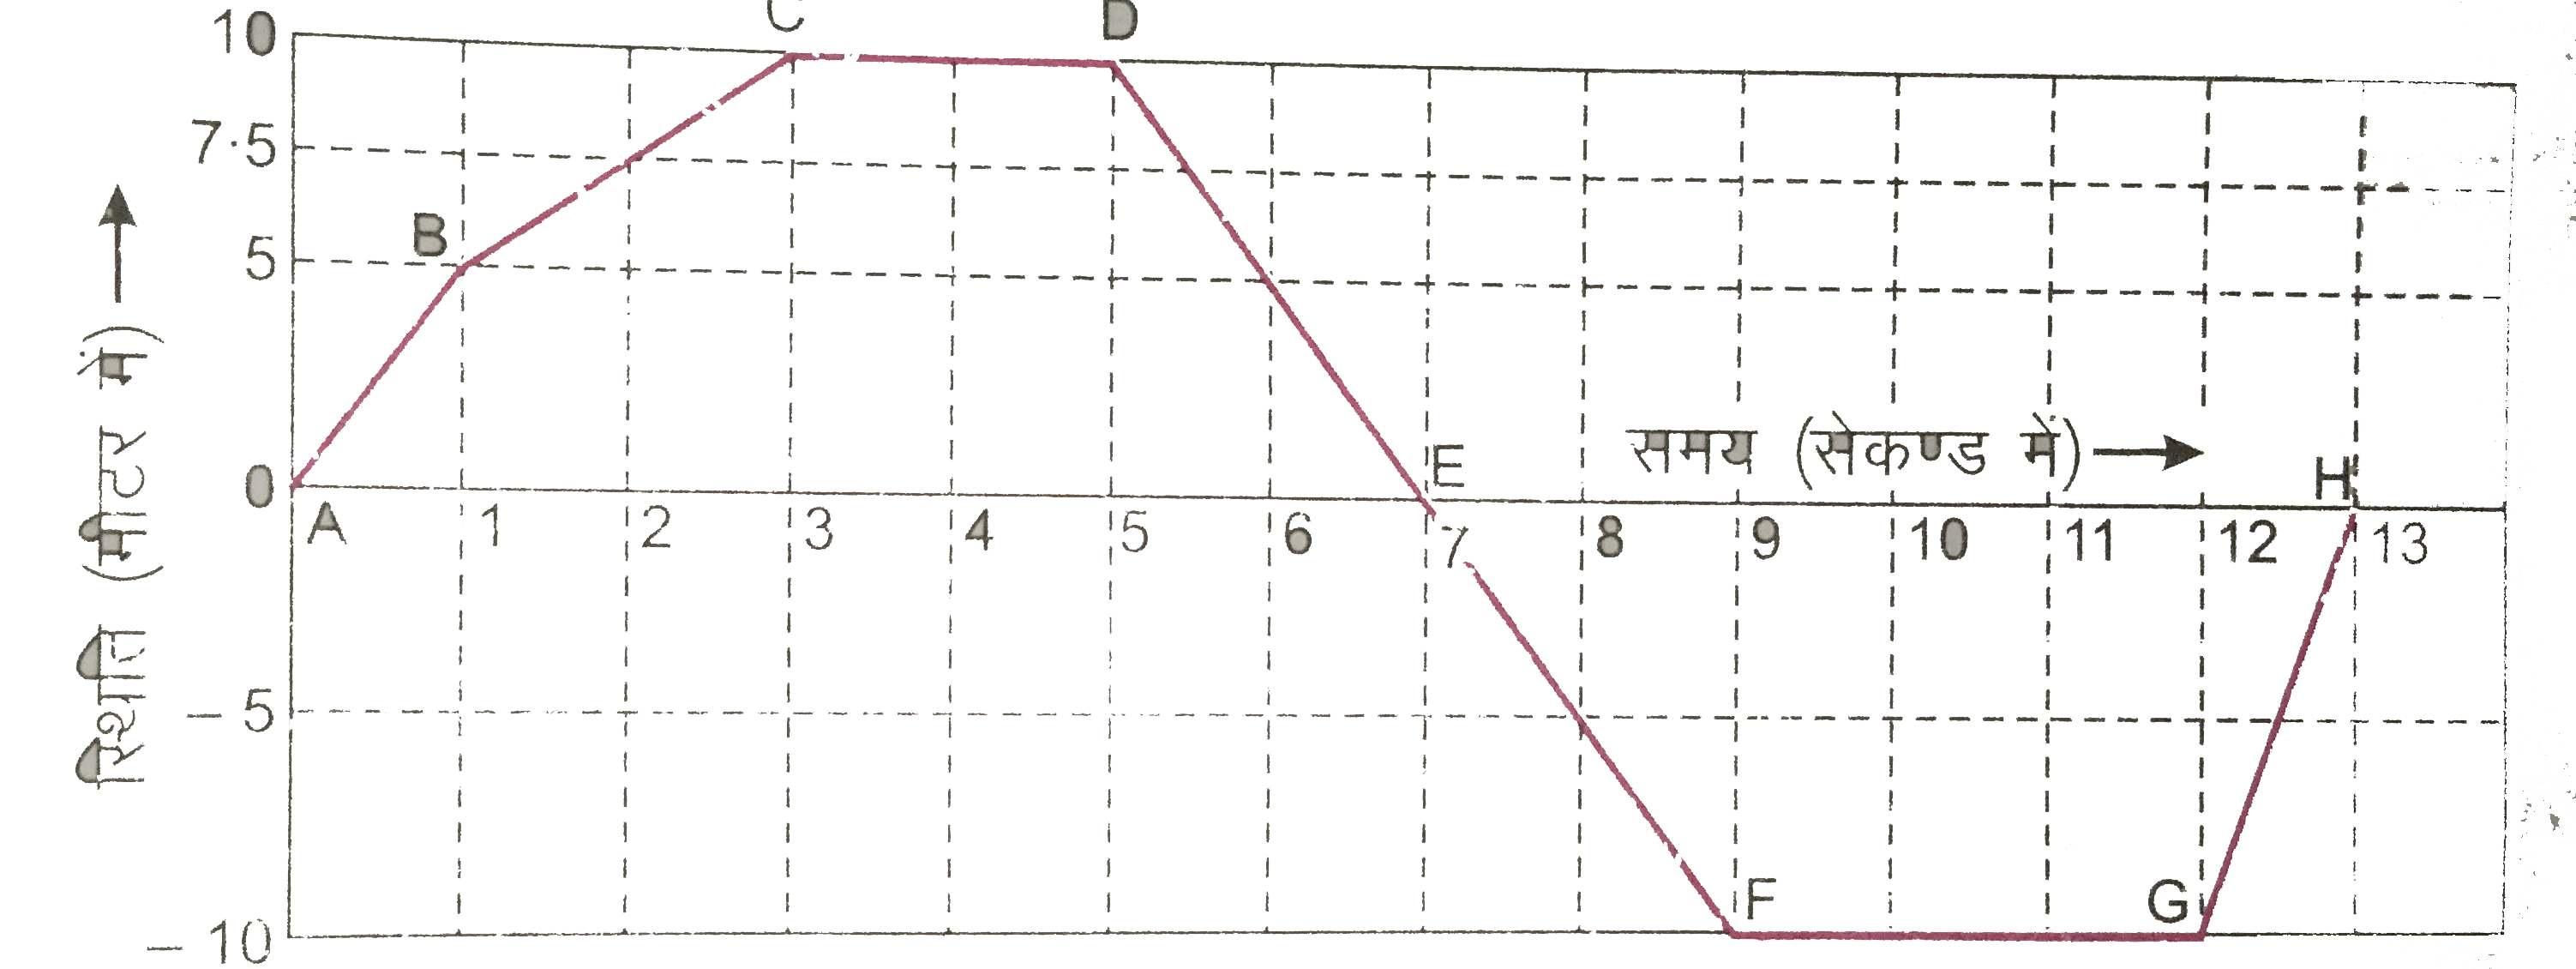 चित्र 3.24 में एक साइकिल सवार का स्थिति - समय ग्राफ दिया गया है । इस ग्राफ द्वारा ज्ञात कीजिए :    10 सेकण्ड के अंत में साइकिल सवार का मूल बिंदु से विस्थापन ।